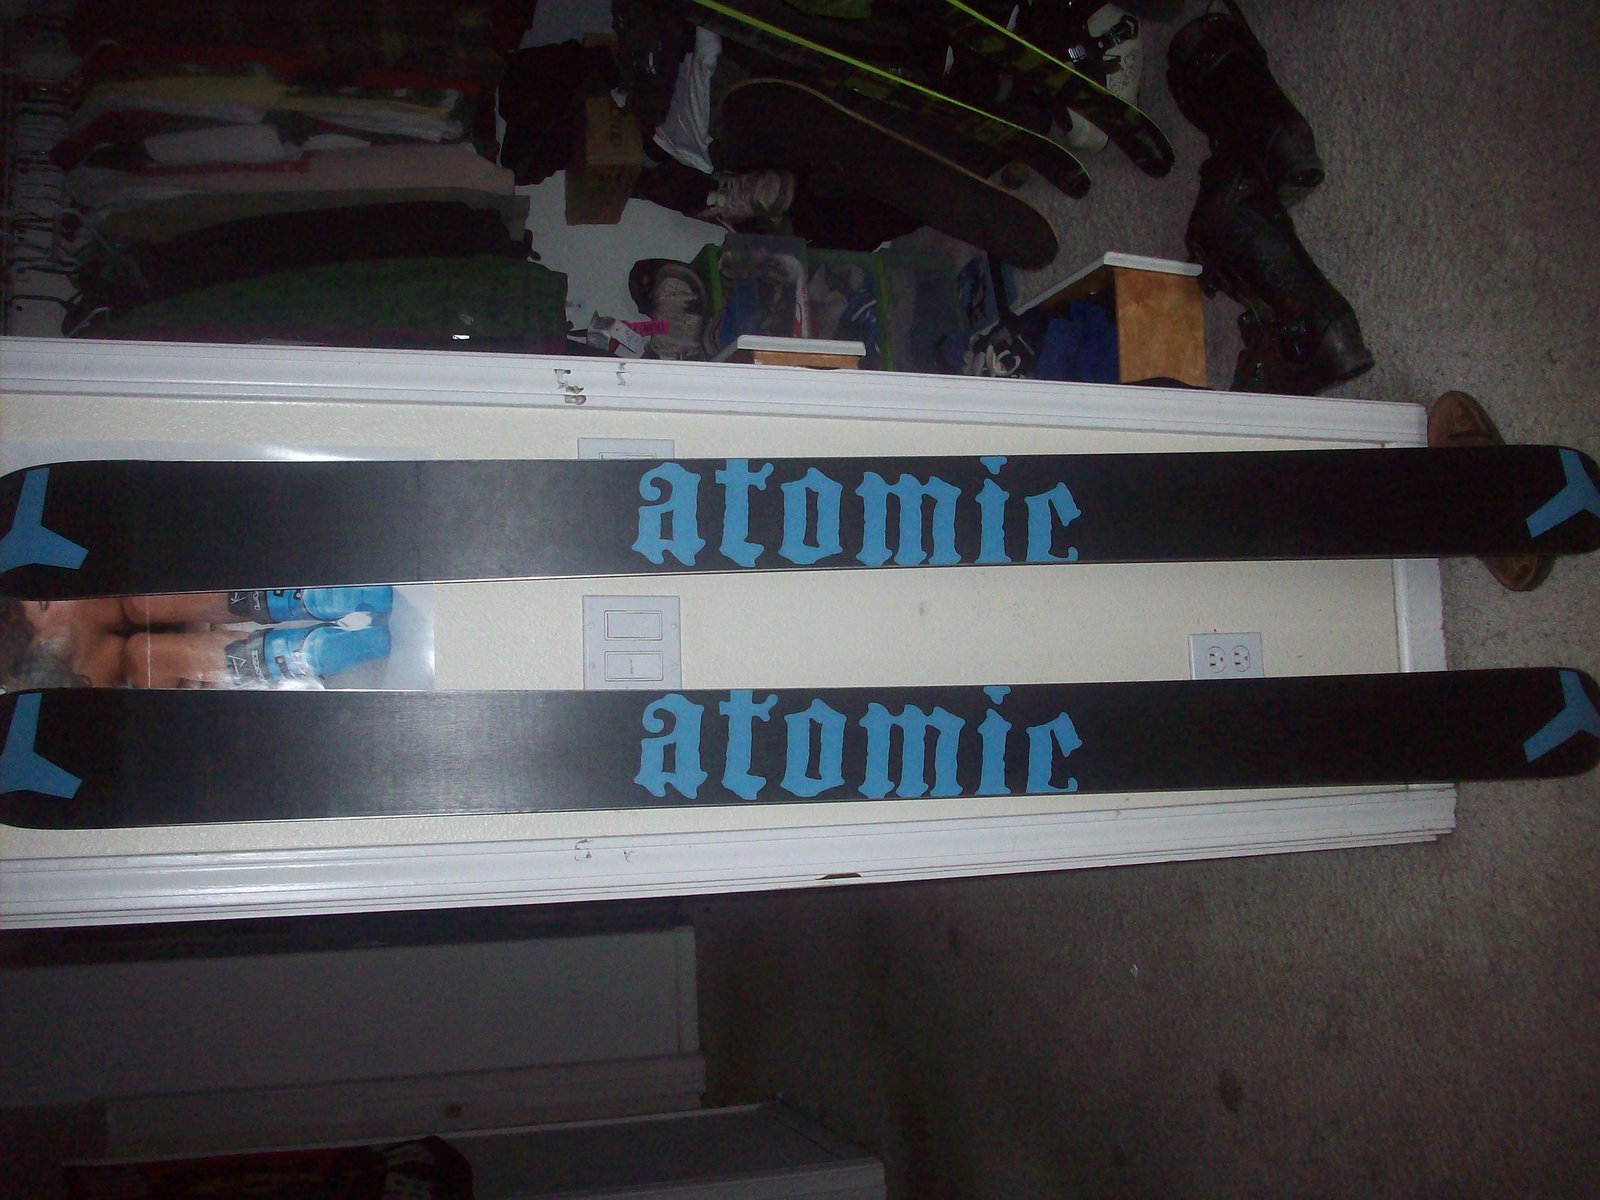 Atomic thug